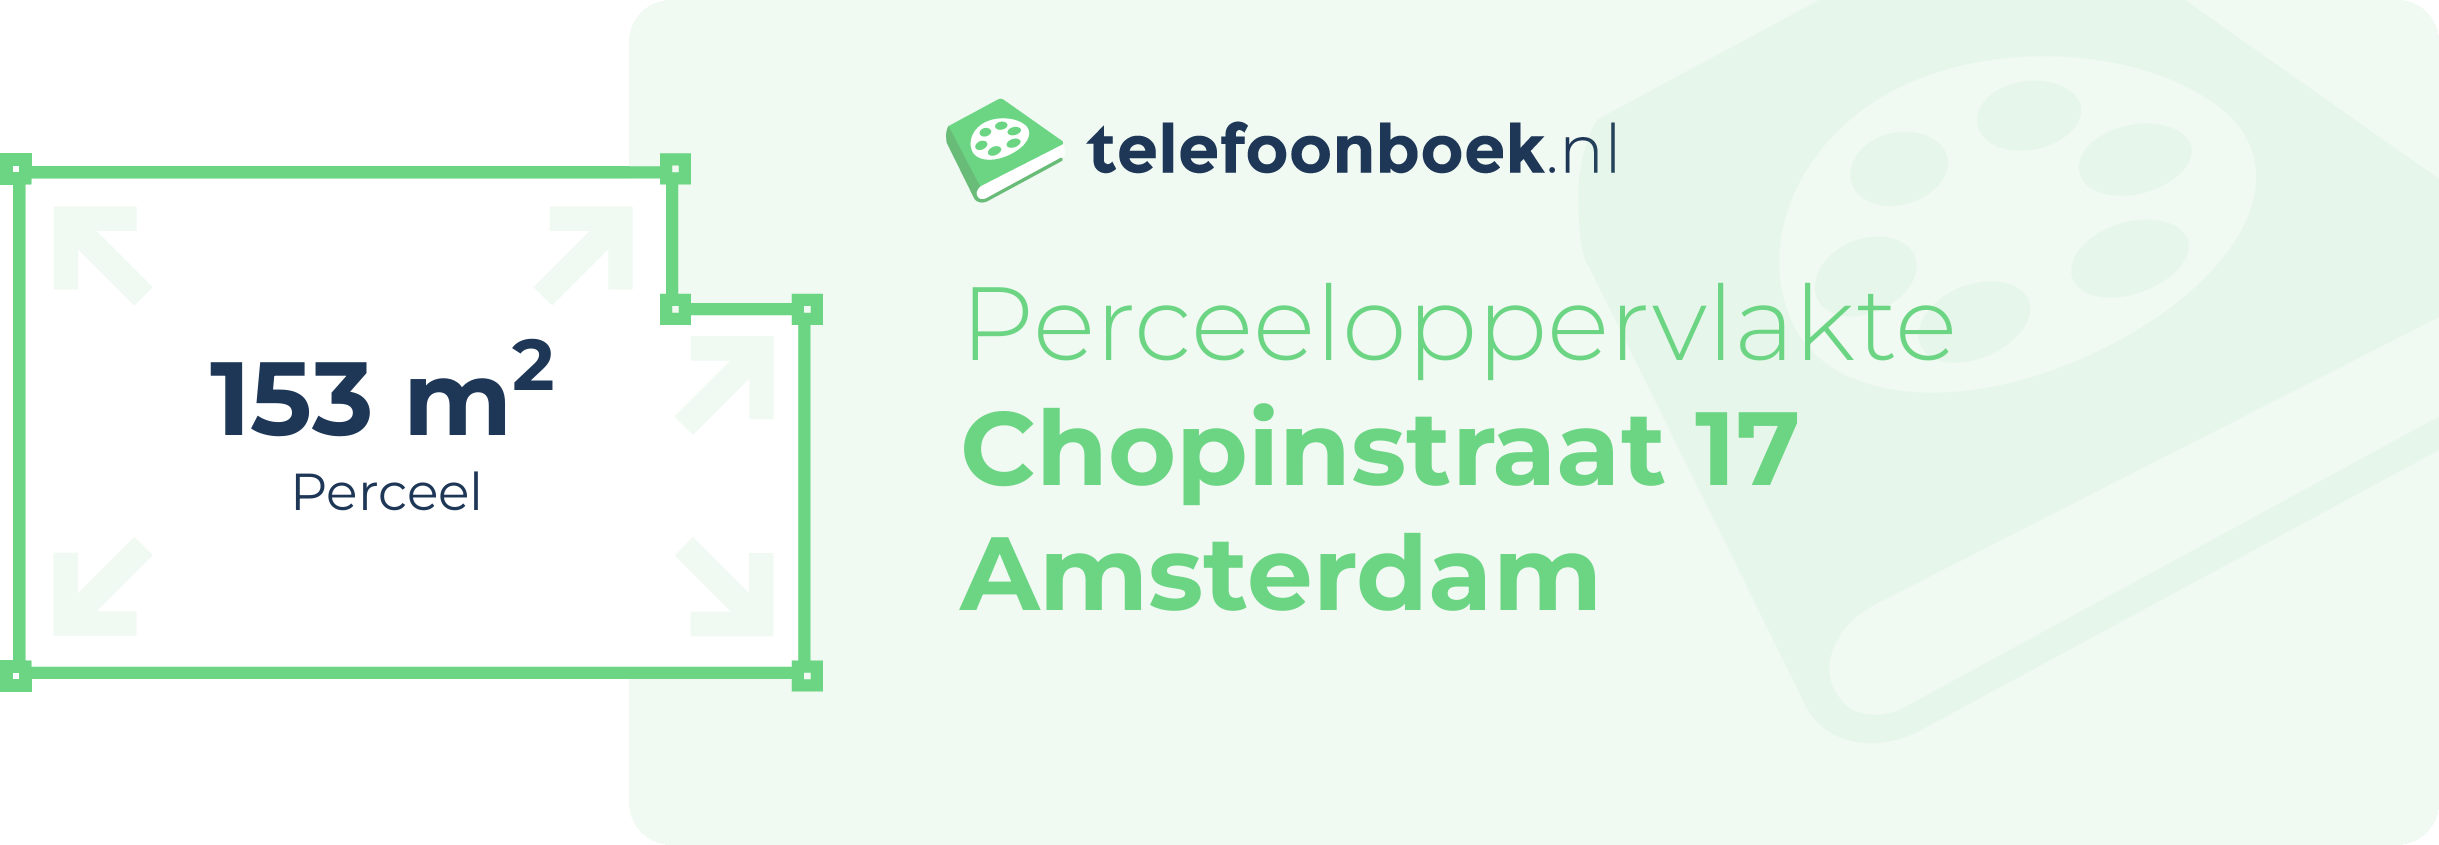 Perceeloppervlakte Chopinstraat 17 Amsterdam